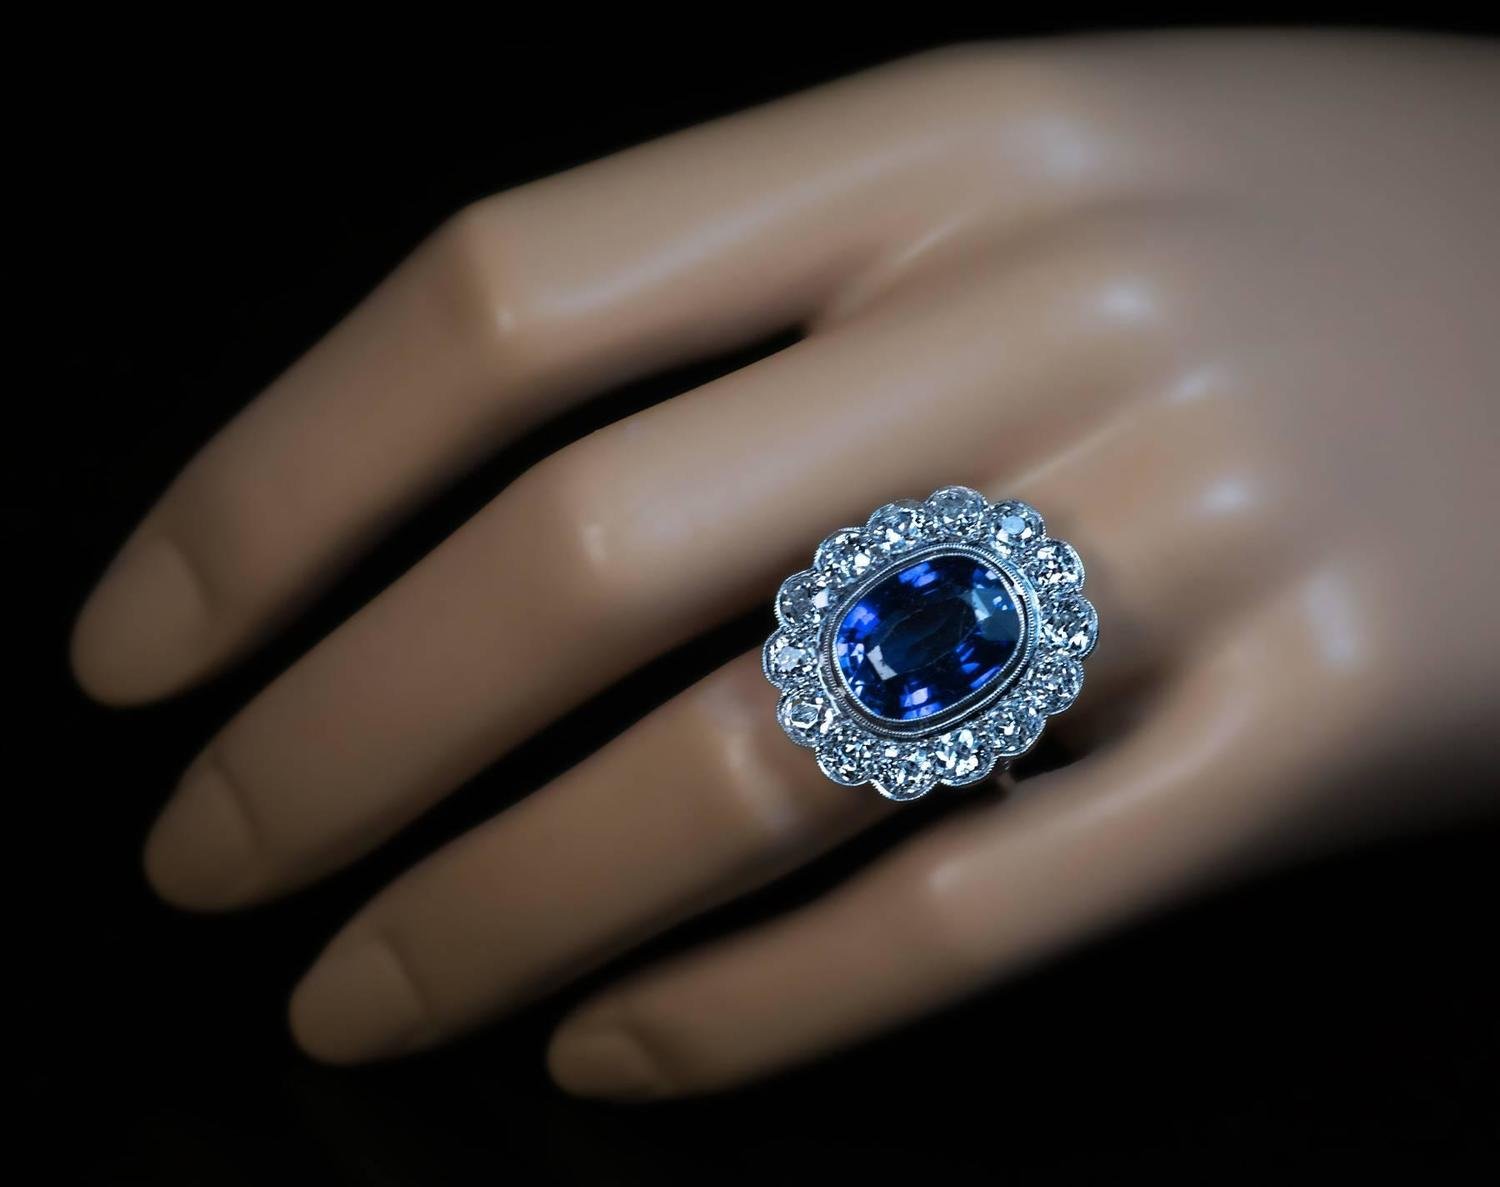 Сапфир на пальце. Сапфир Логан (423 карата). Кольцо перстень с сапфиром и бриллиантами. Кольцо с сапфиром s1ky4900.